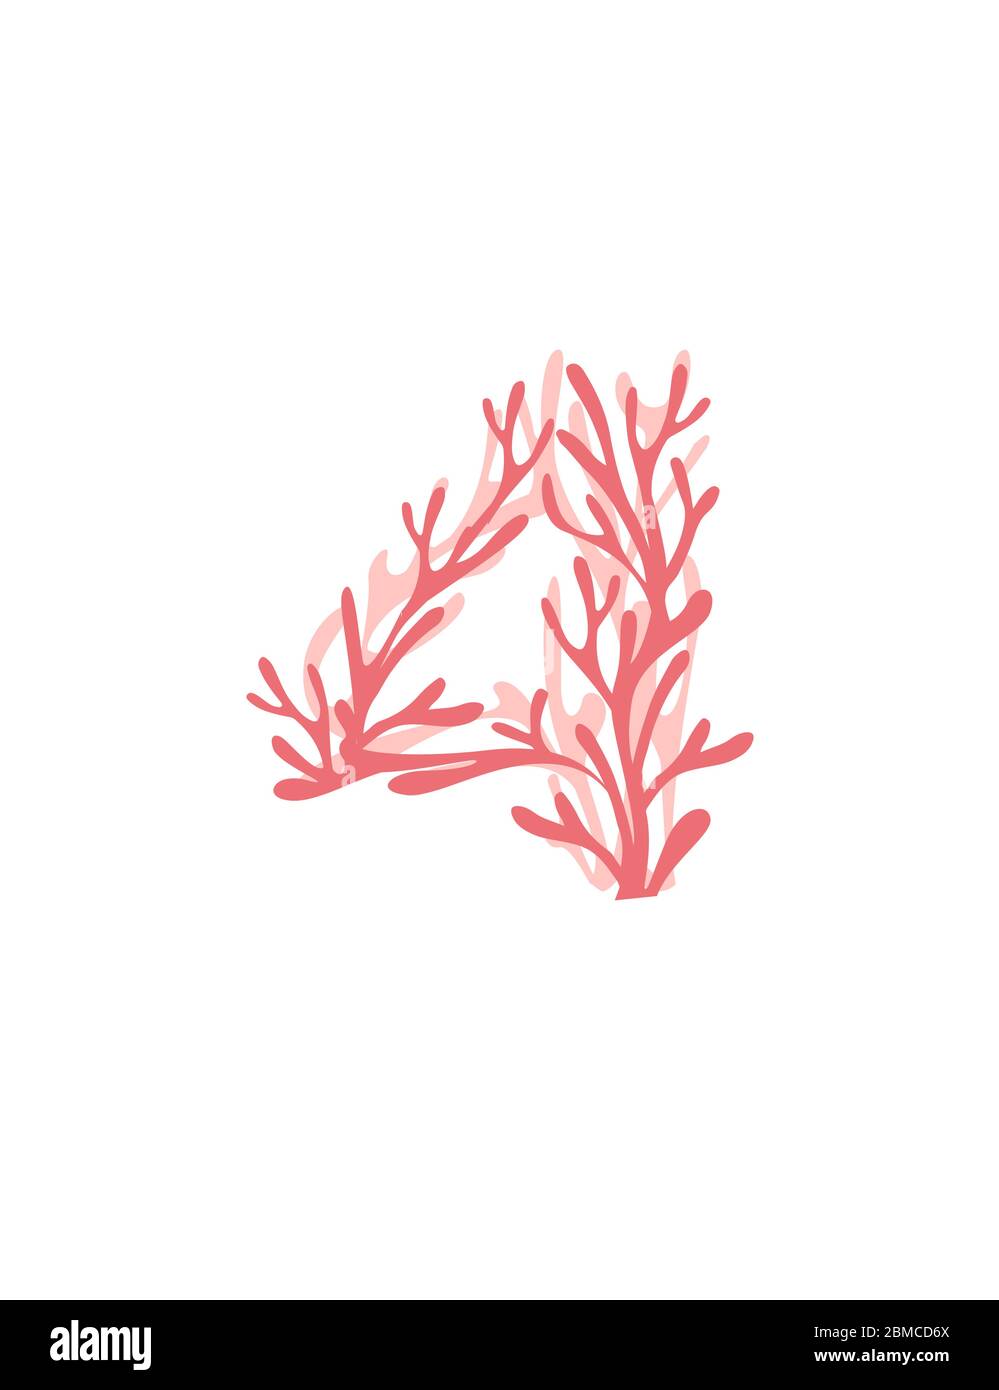 Nummer 4 pink gefärbte Algen Unterwasserpflanzen Meereskorallenelemente flache Vektorgrafiken auf weißem Hintergrund Stock Vektor